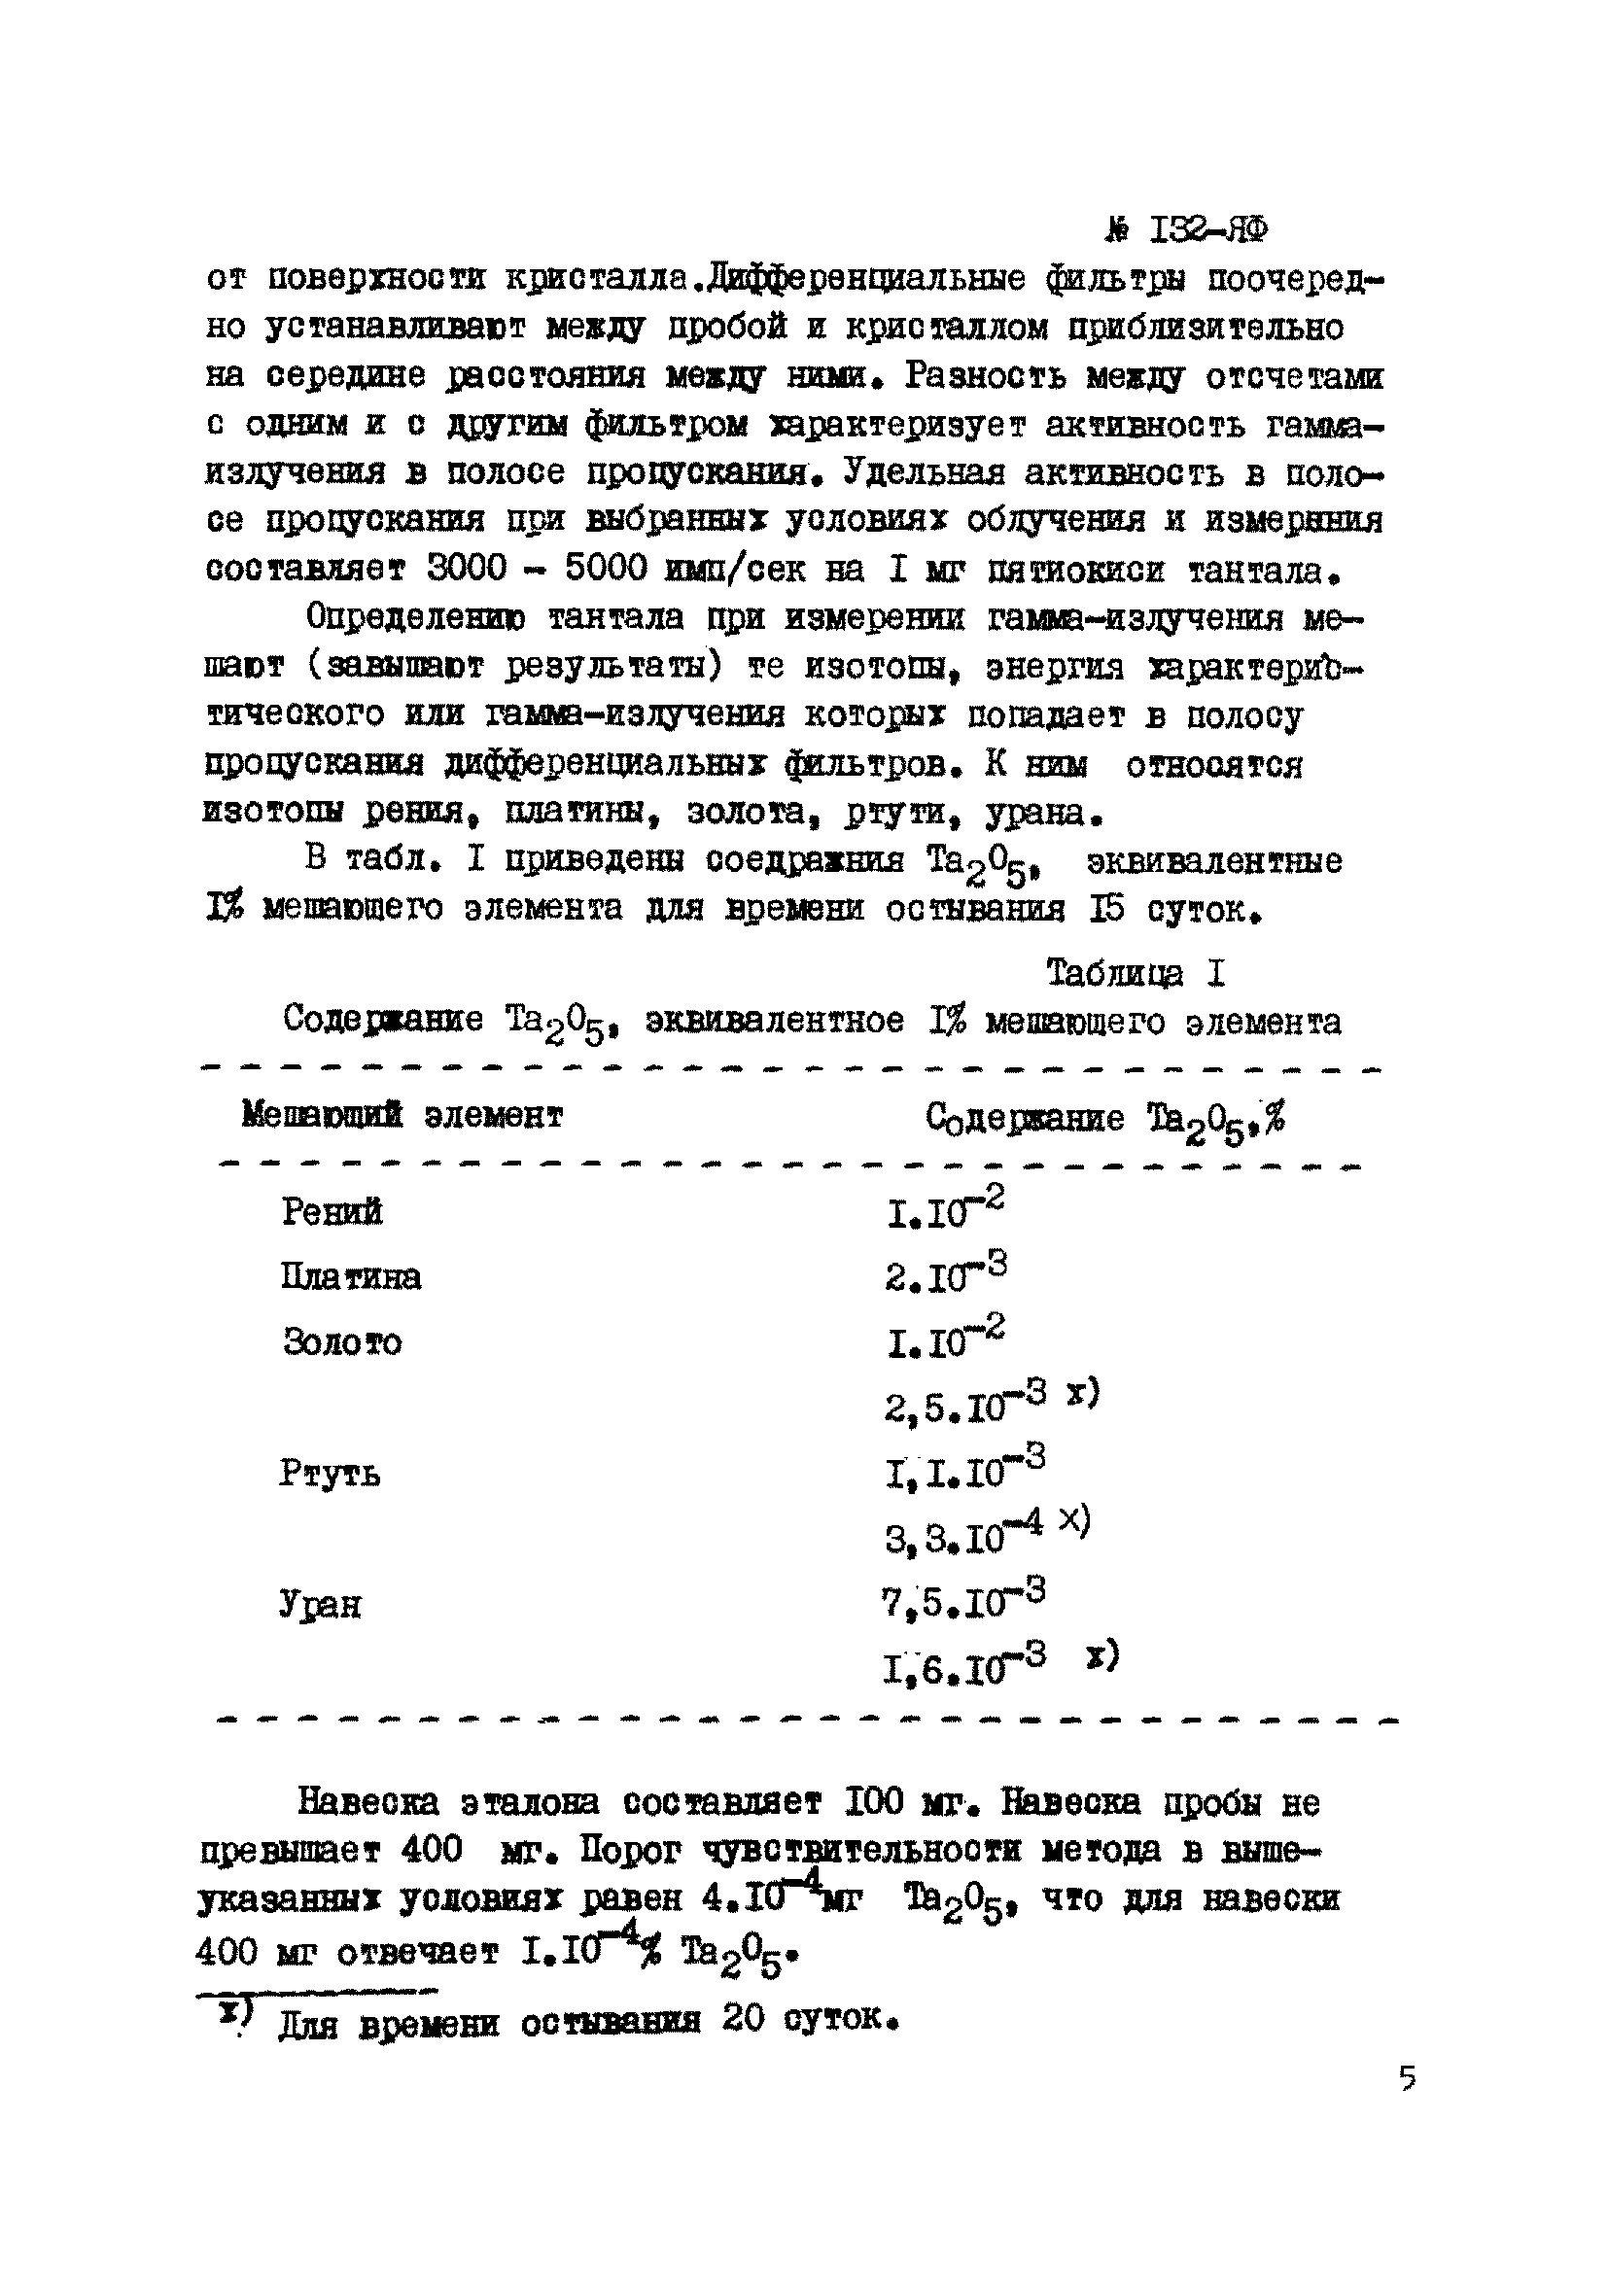 Инструкция НСАМ 132-ЯФ